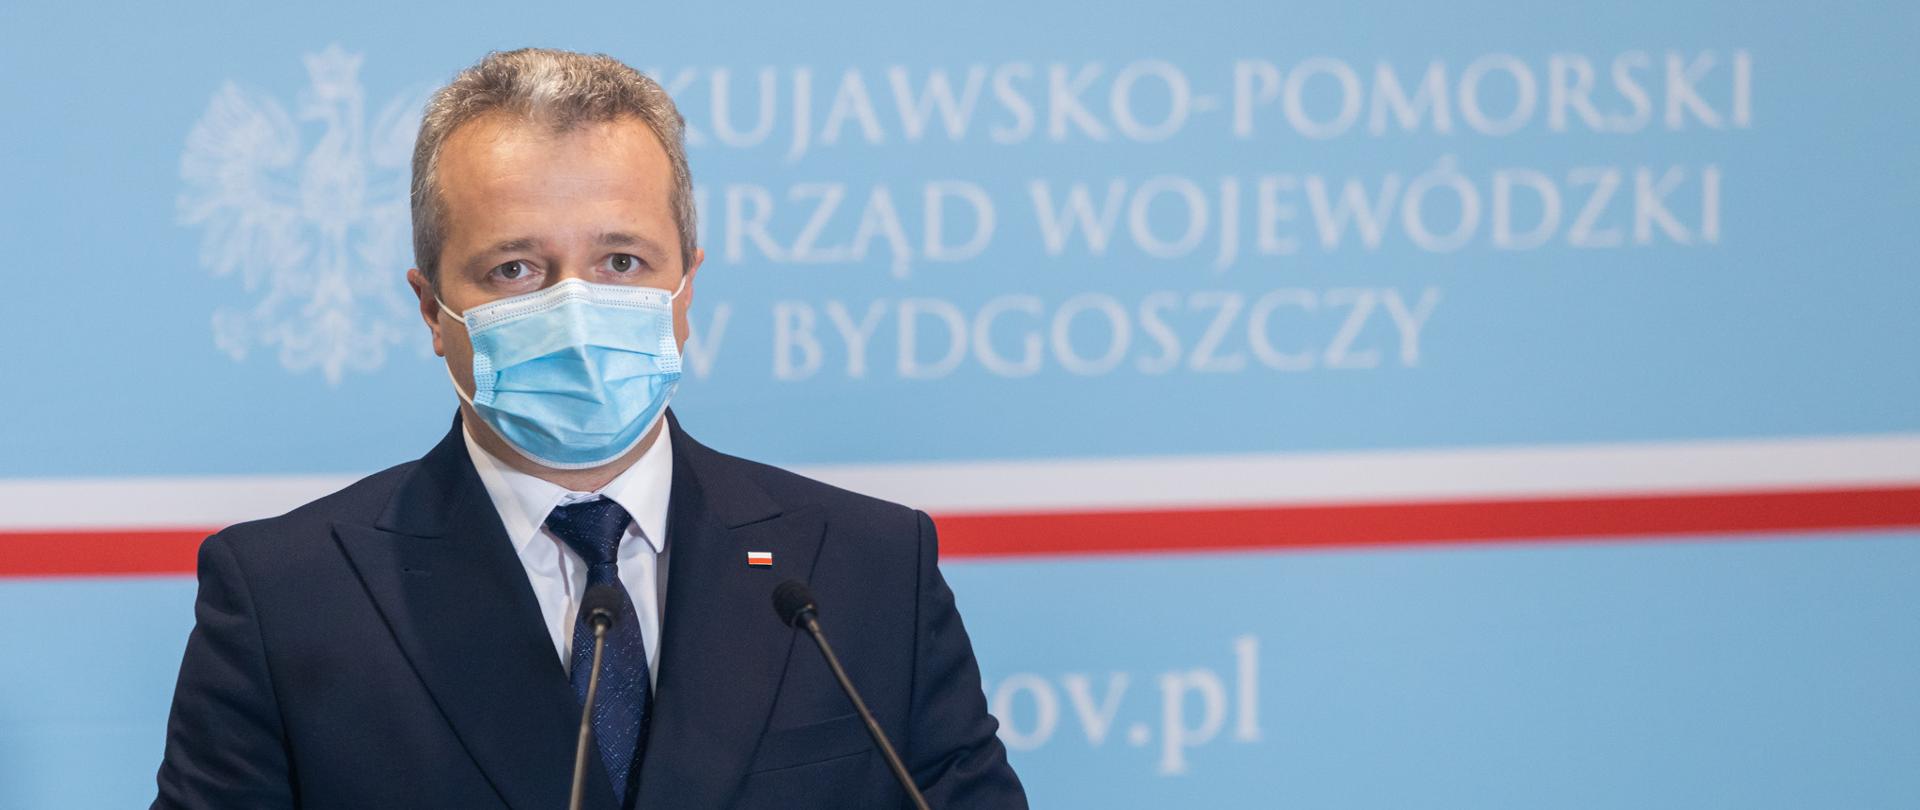 Wojewoda Kujawsko-Pomorski Mikołaj Bogdanowicz przemawia podczas konferencji dotyczącej aktualnej sytuacji epidemicznej oraz realizacji programu szczepień w regionie